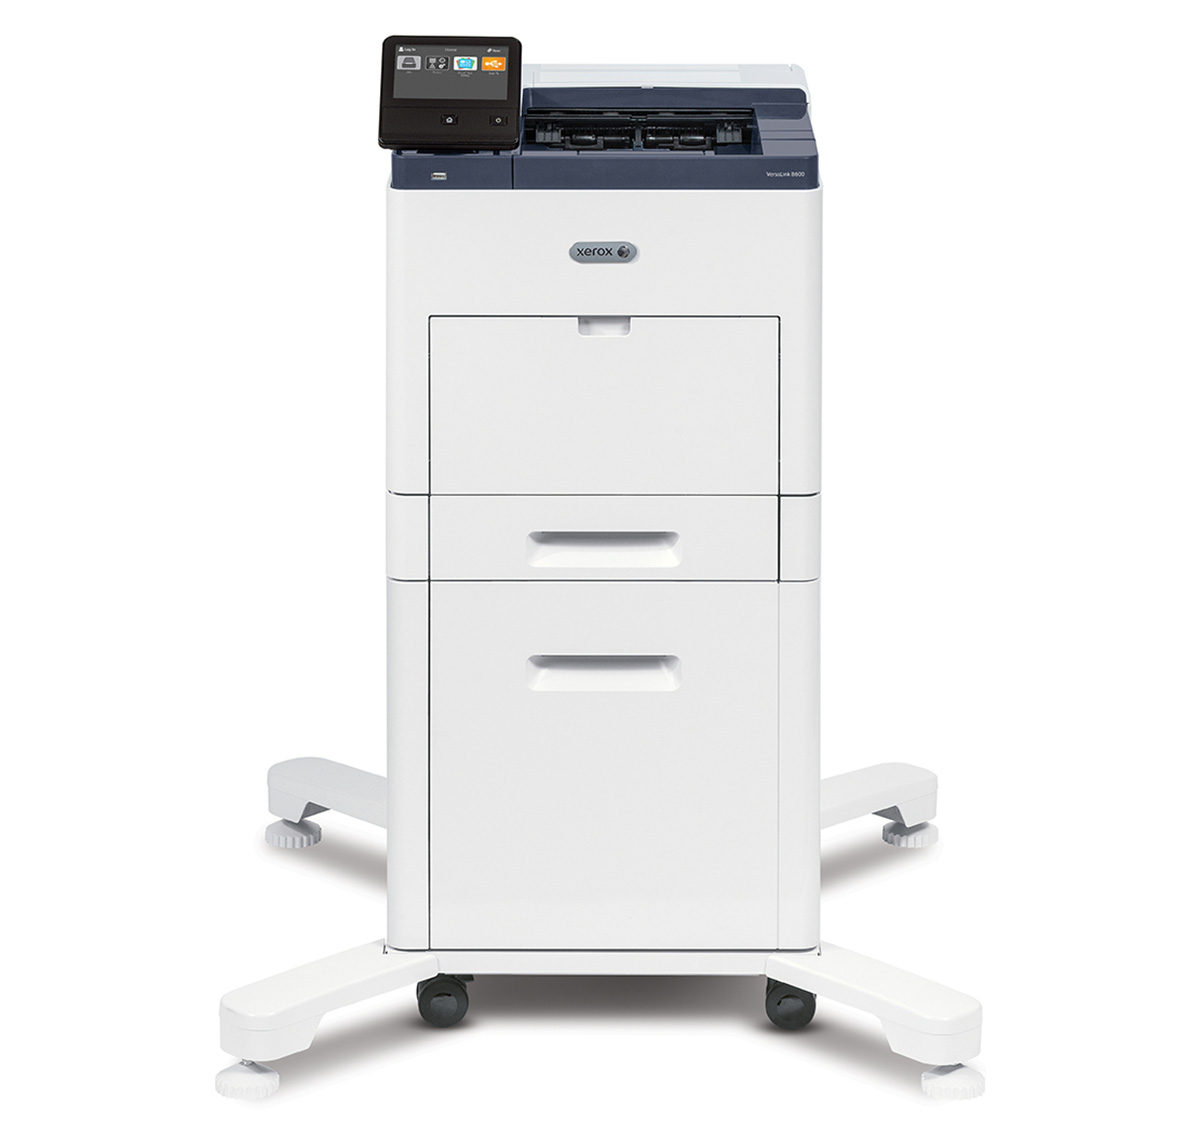 Imprimante Xerox VersaLink B600 équipée d'un socle sur roulettes et d'un panneau de commande tactile, représentant une solution d'impression efficace et moderne pour les entreprises, proposée par Xerox D&O Partners.